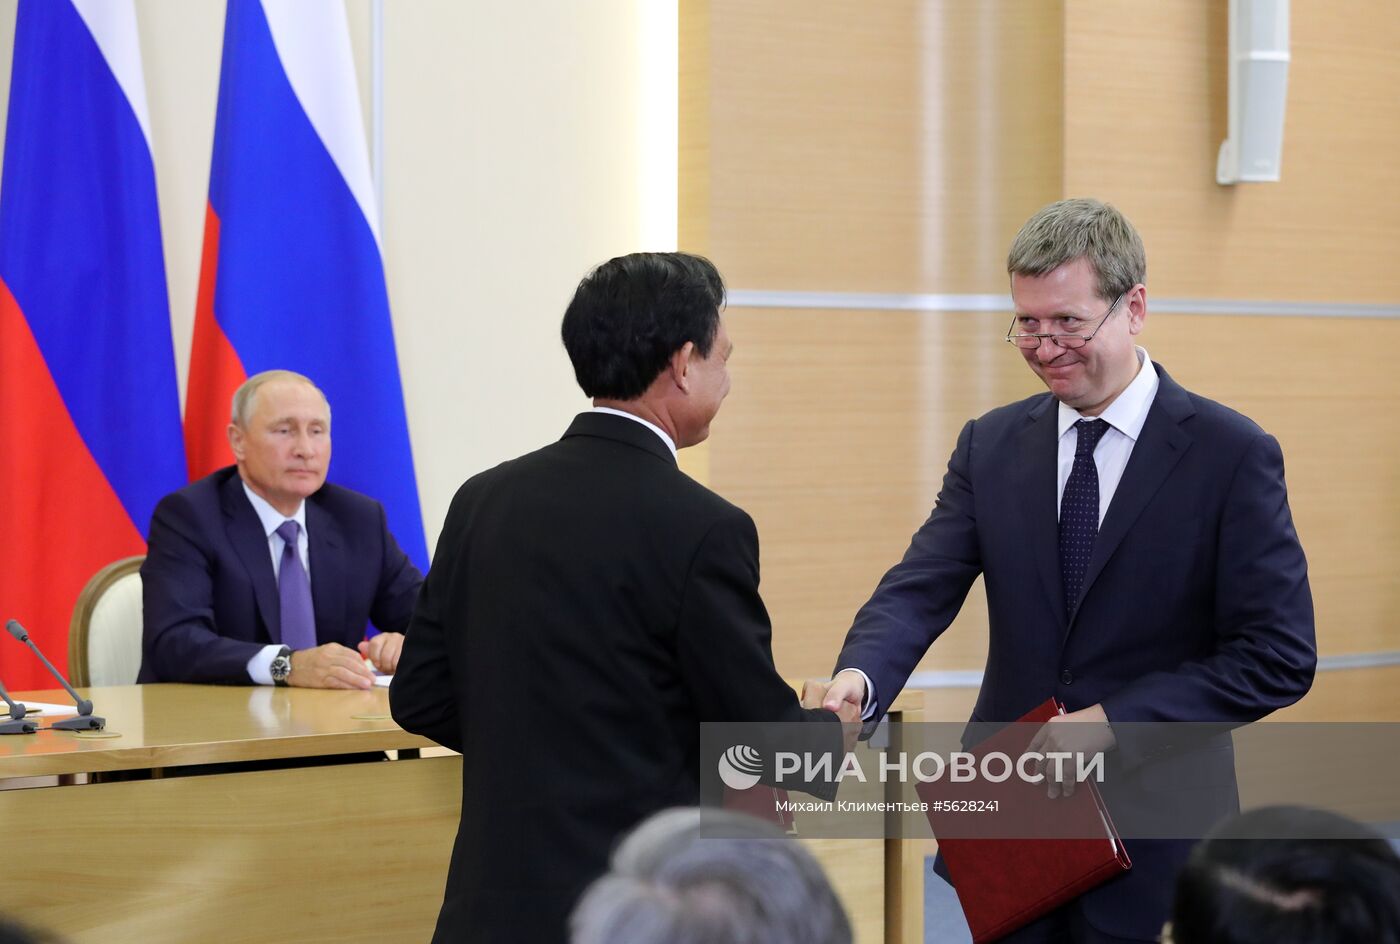 Президент РФ В. Путин встретился с генеральным секретарём ЦК коммунистической партии Вьетнама Н. Фу Чонгом